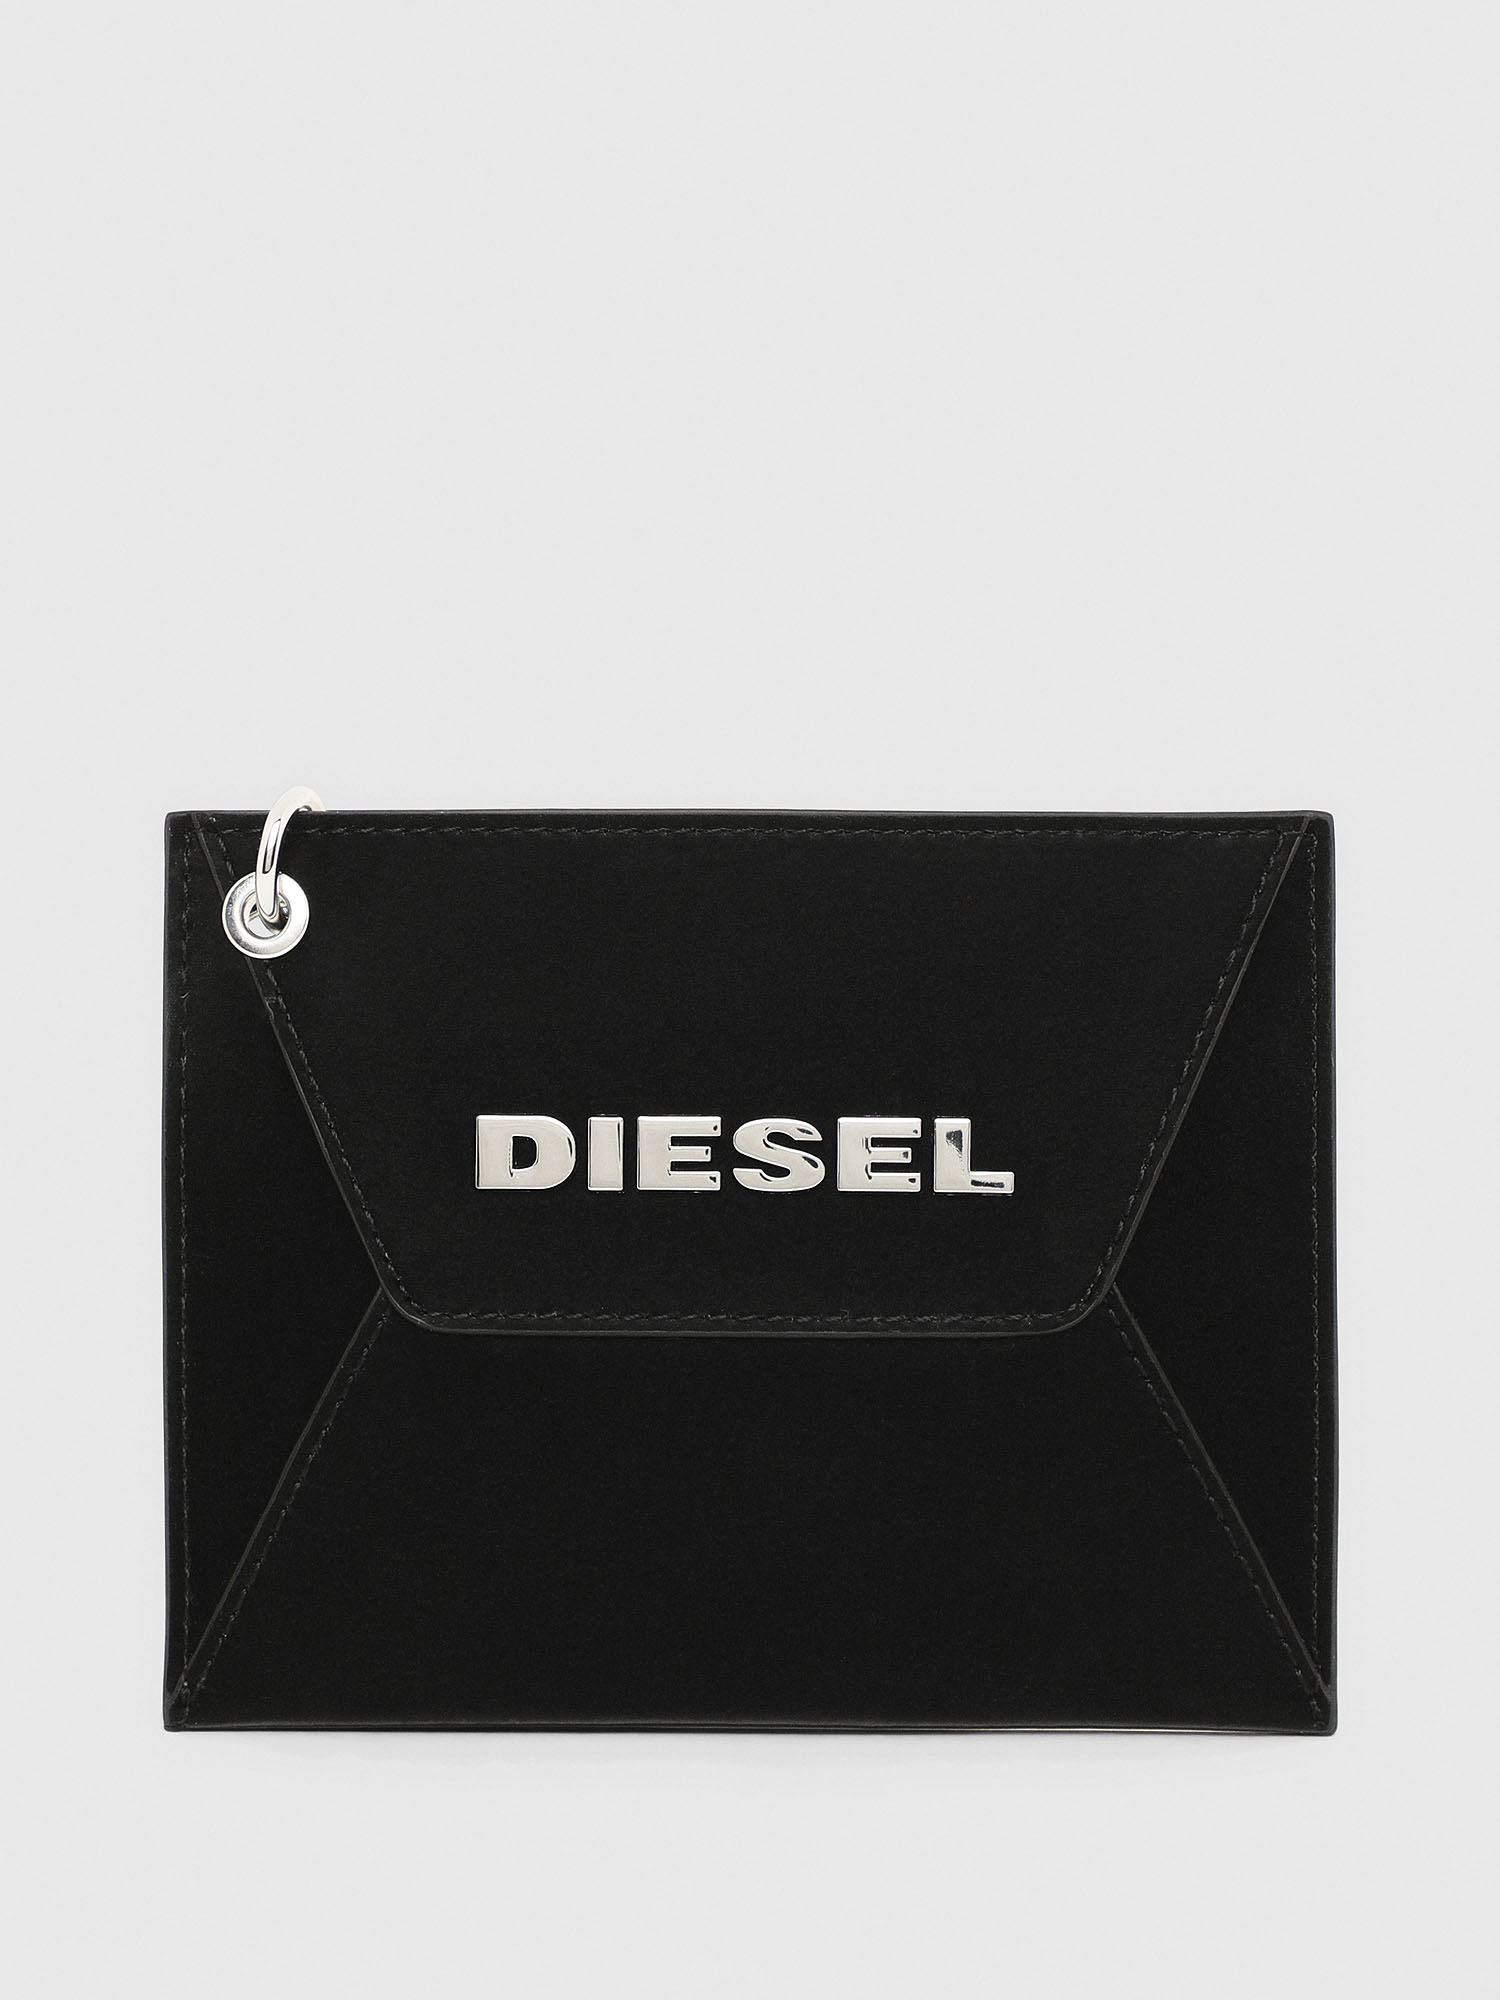 Diesel - MAYLA, Black - Image 1